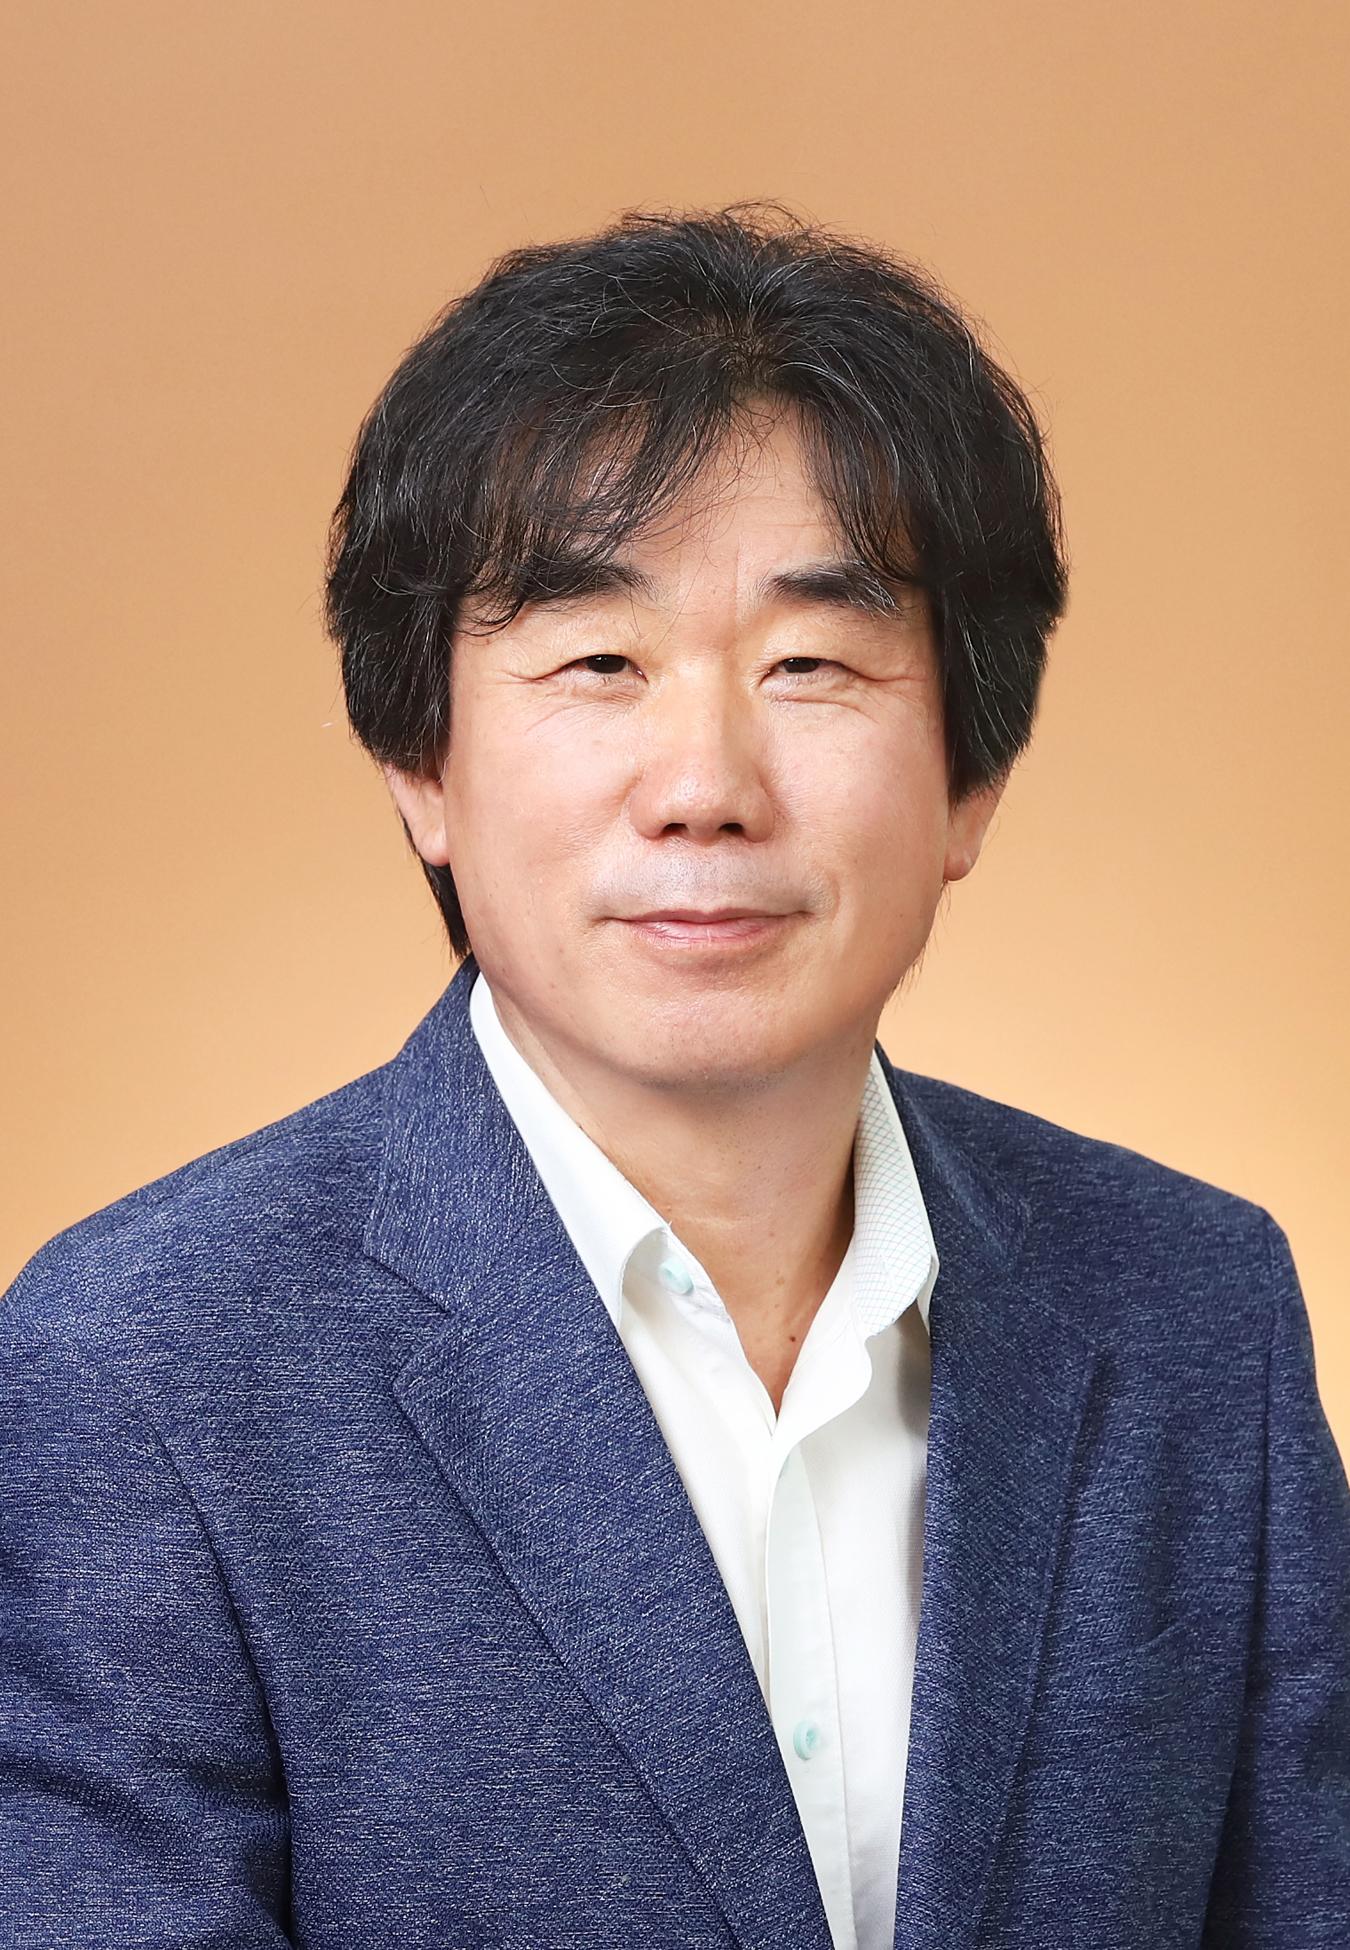 김명현 교수 사진